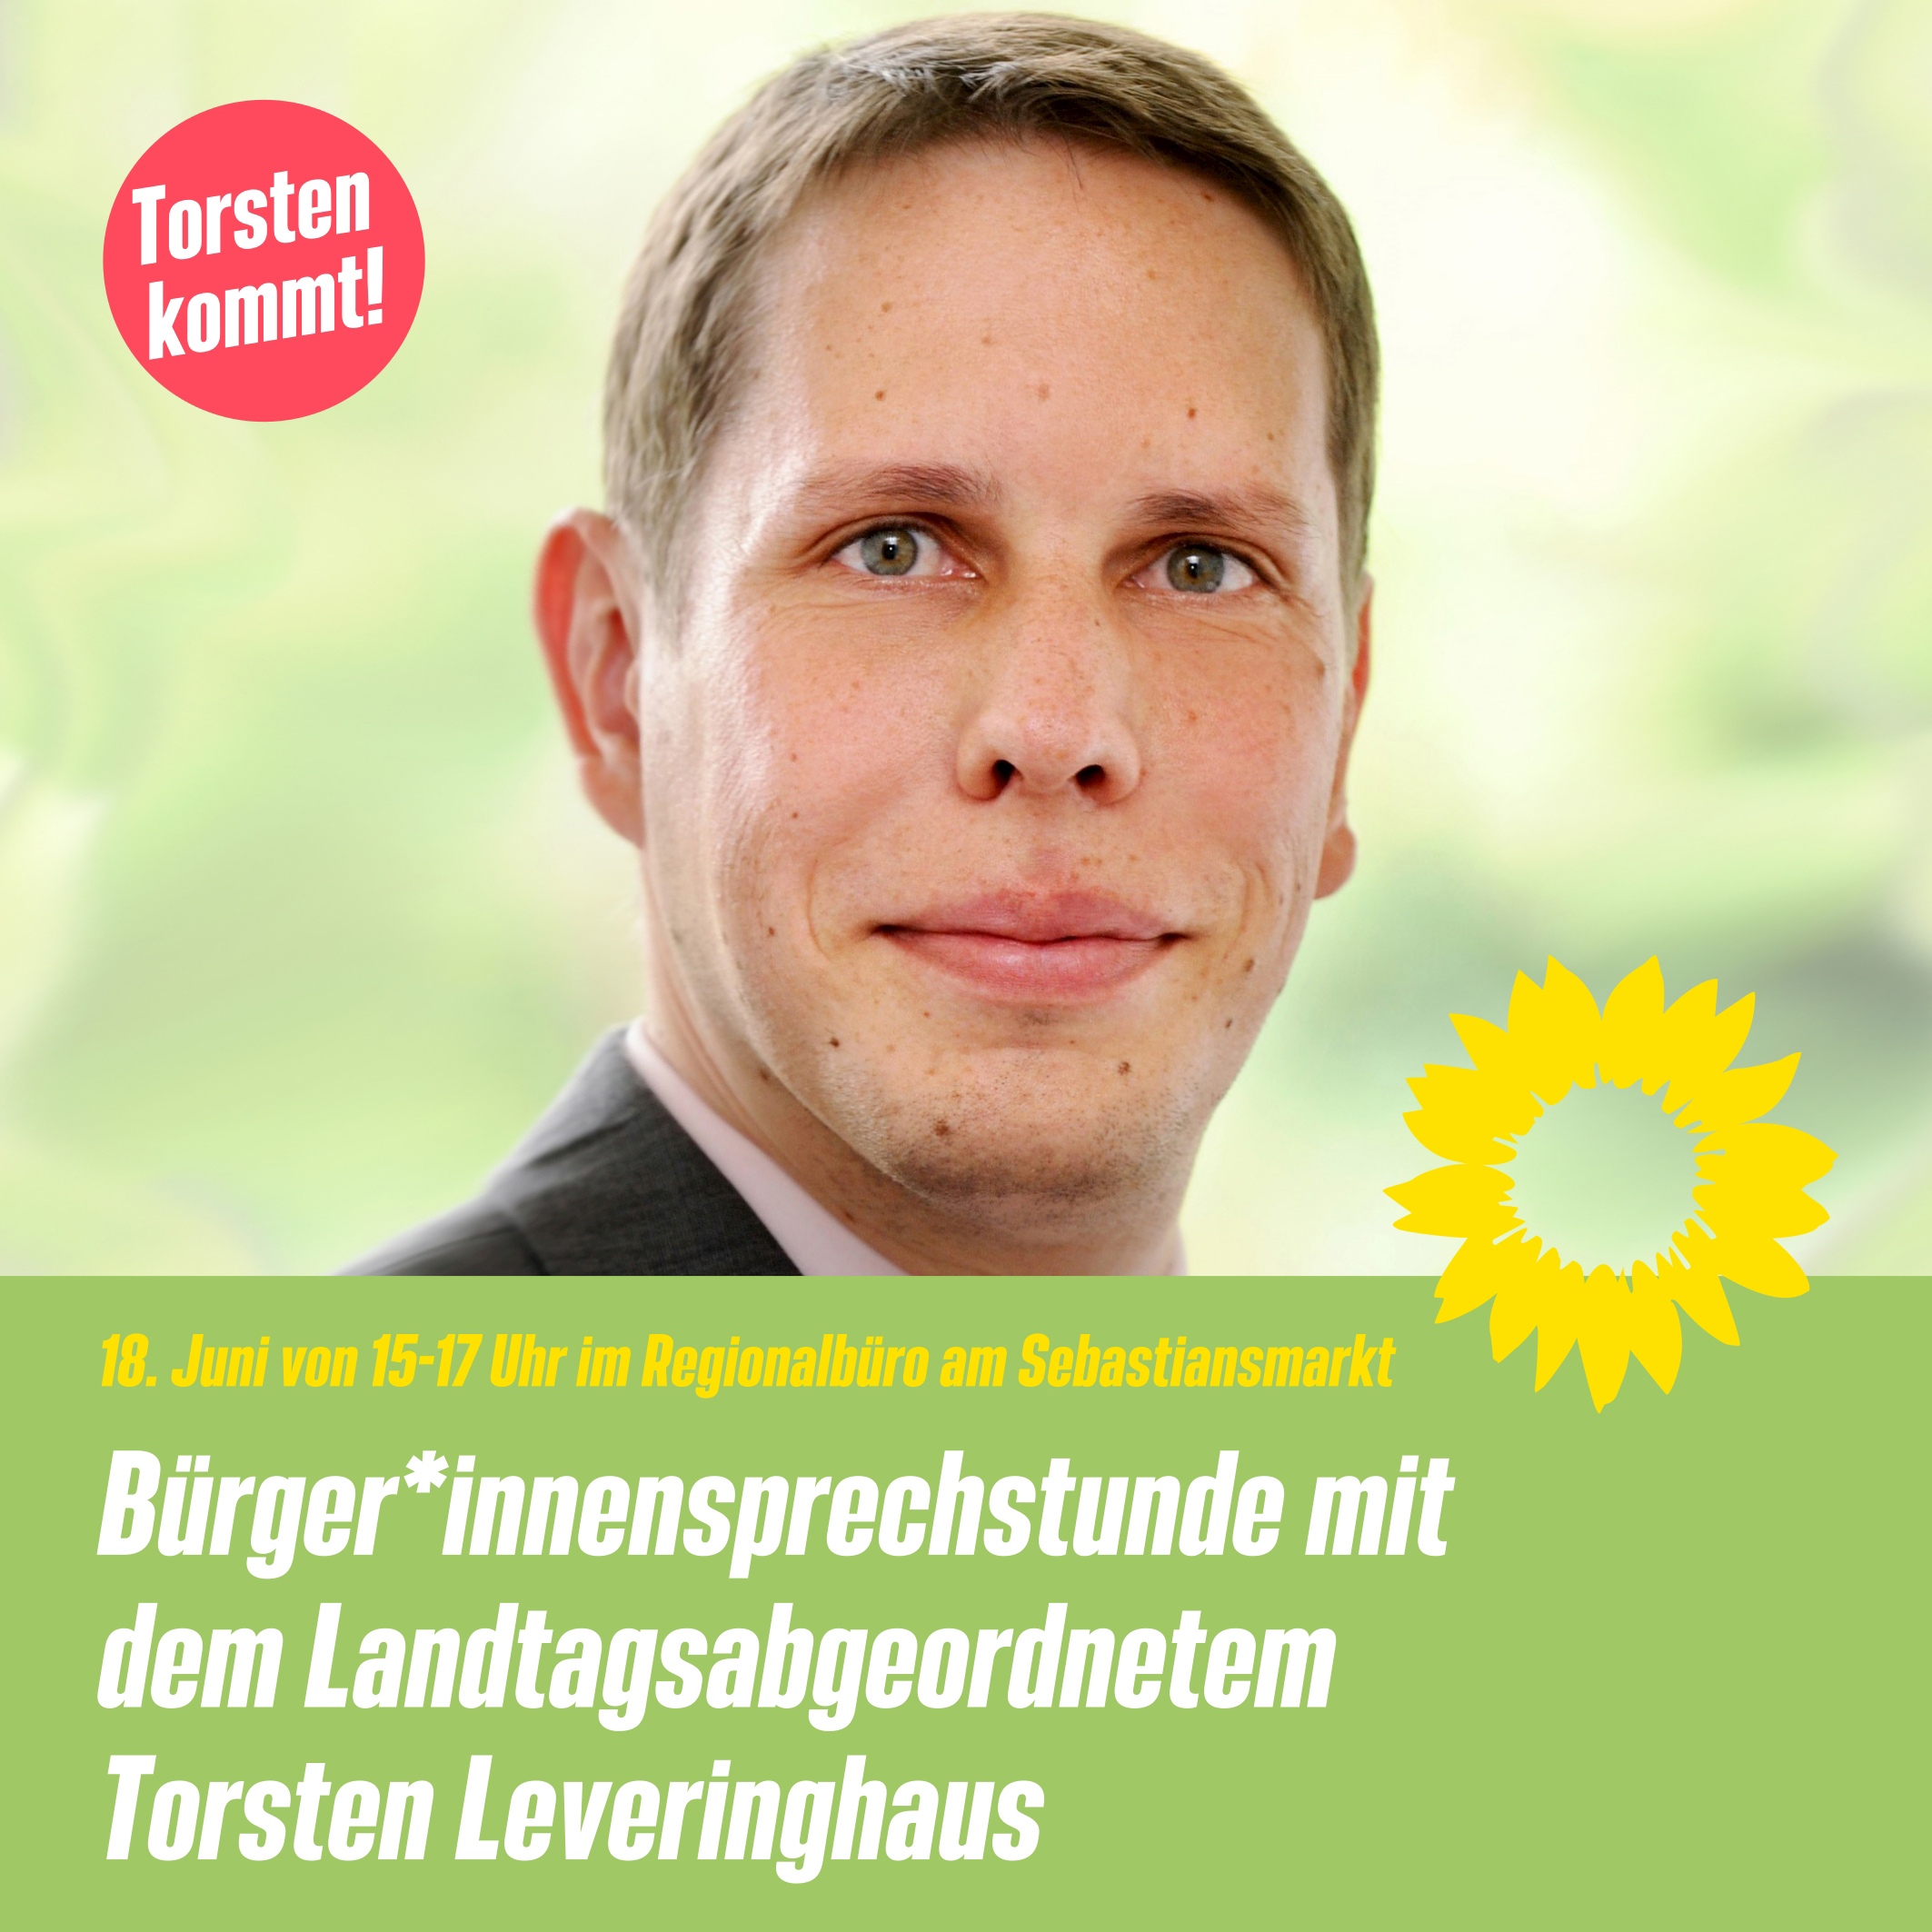 Pressemitteilung: 18.06.2022 Bürger*innensprechstunde mit dem Landtagsabgeordneten Torsten Leveringhaus in Seeheim-Jugenheim